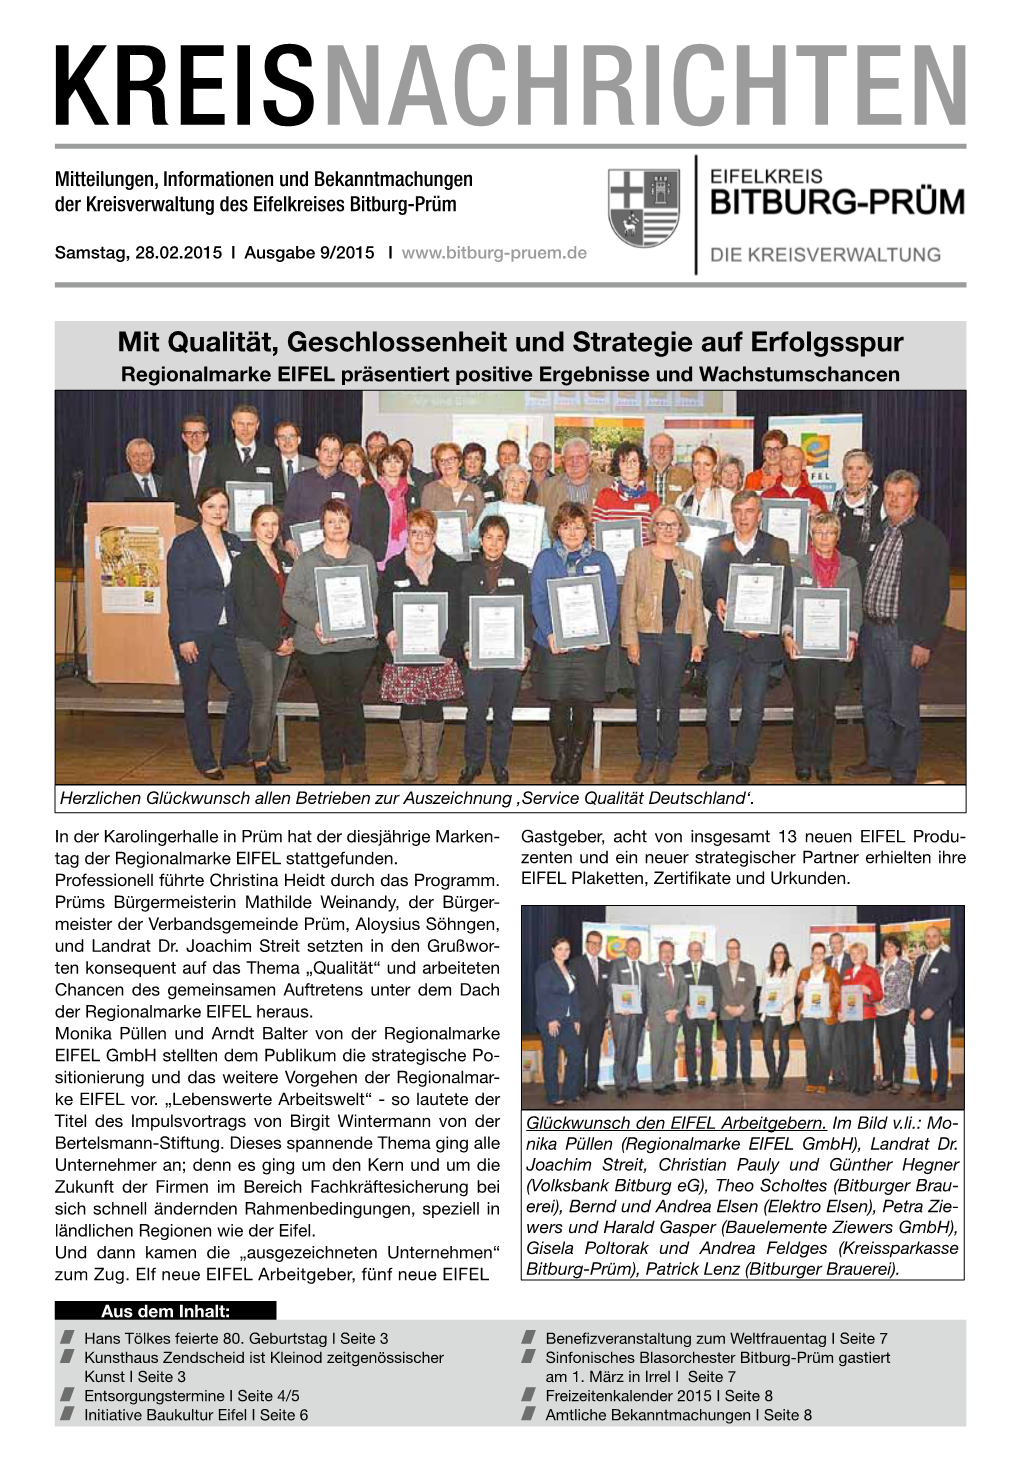 Initiative Baukultur Eifel I Seite 6 Amtliche Bekanntmachungen I Seite 8 Seite 2 Ausgabe 9/2015 Kreisnachrichten Bitburg-Prüm